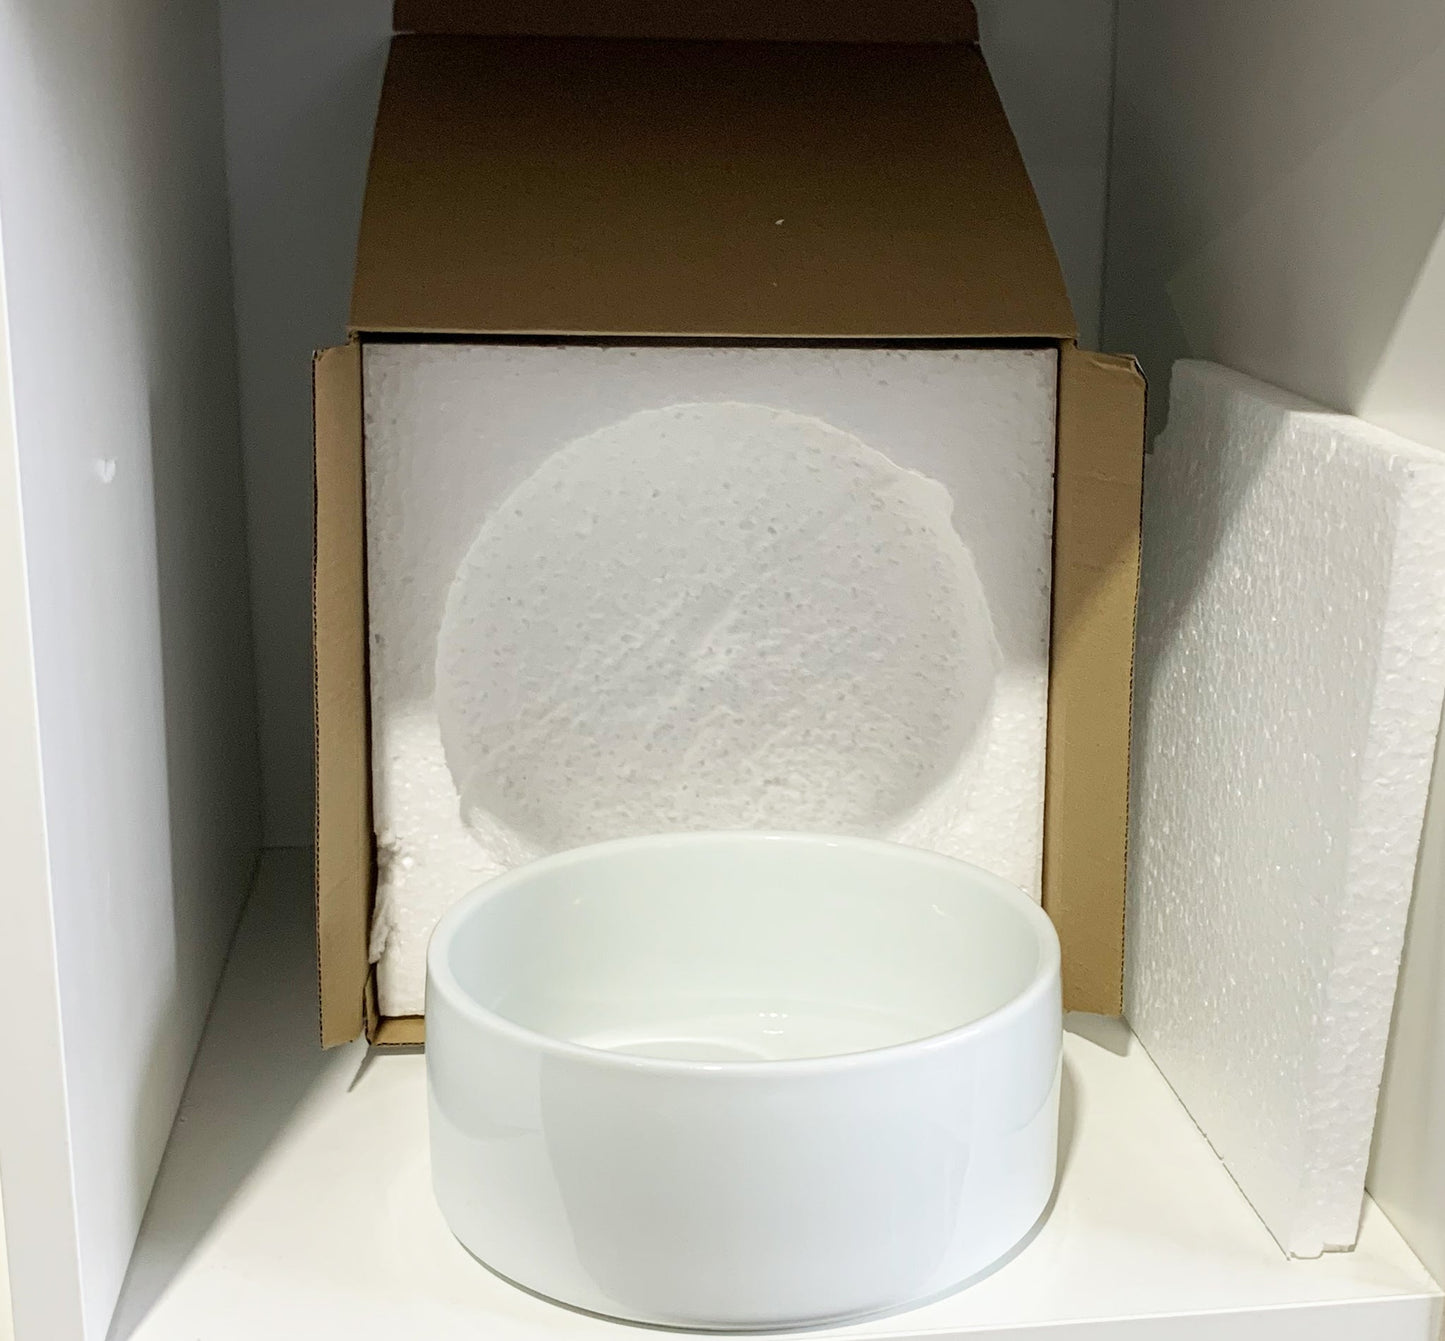 18-PACK-Small Sublimation Pet Bowl 4,9 x 2,8 pouces avec revêtement AAA - | Emballage en polystyrène renforcé"